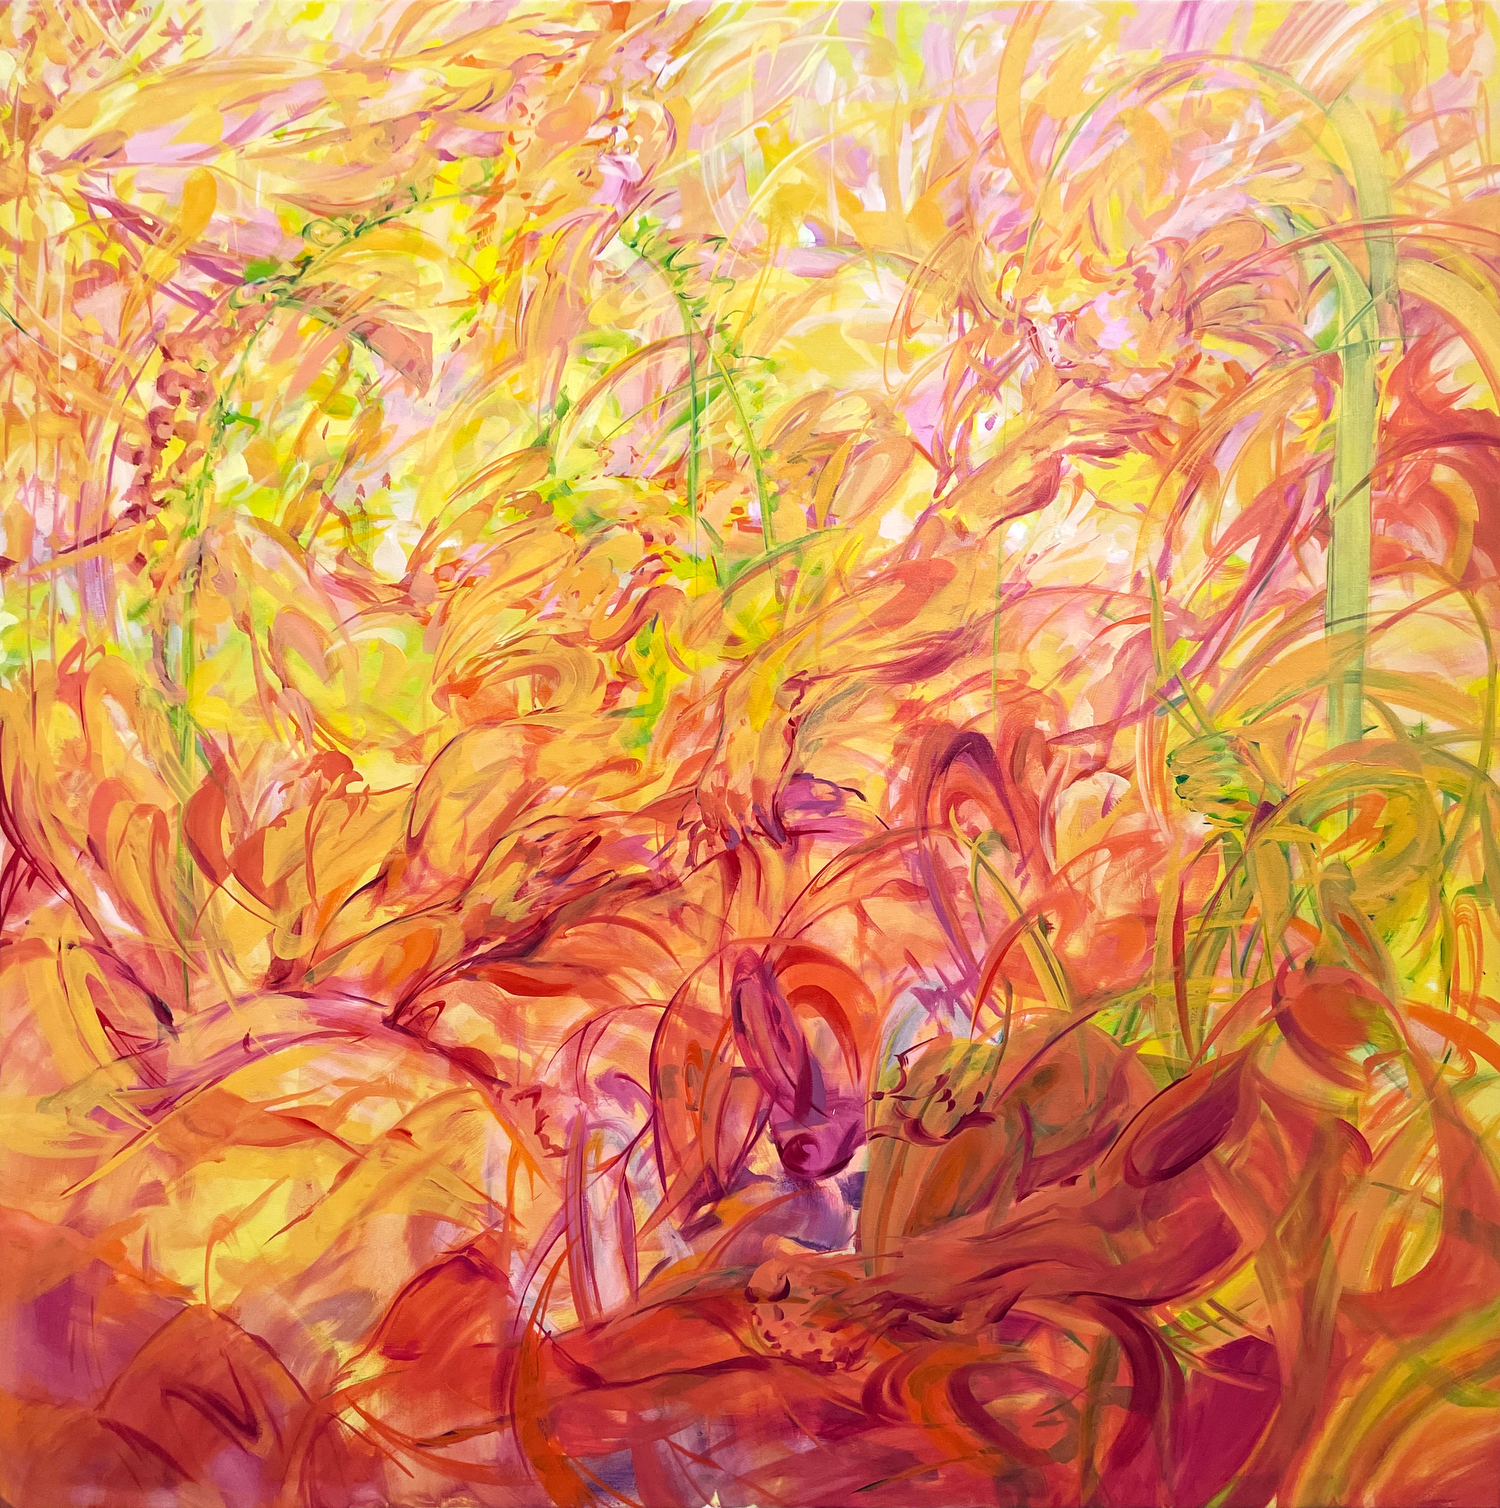 Julia Jo, In Bloom, 2022, oil on canvas, 60 x 60 in